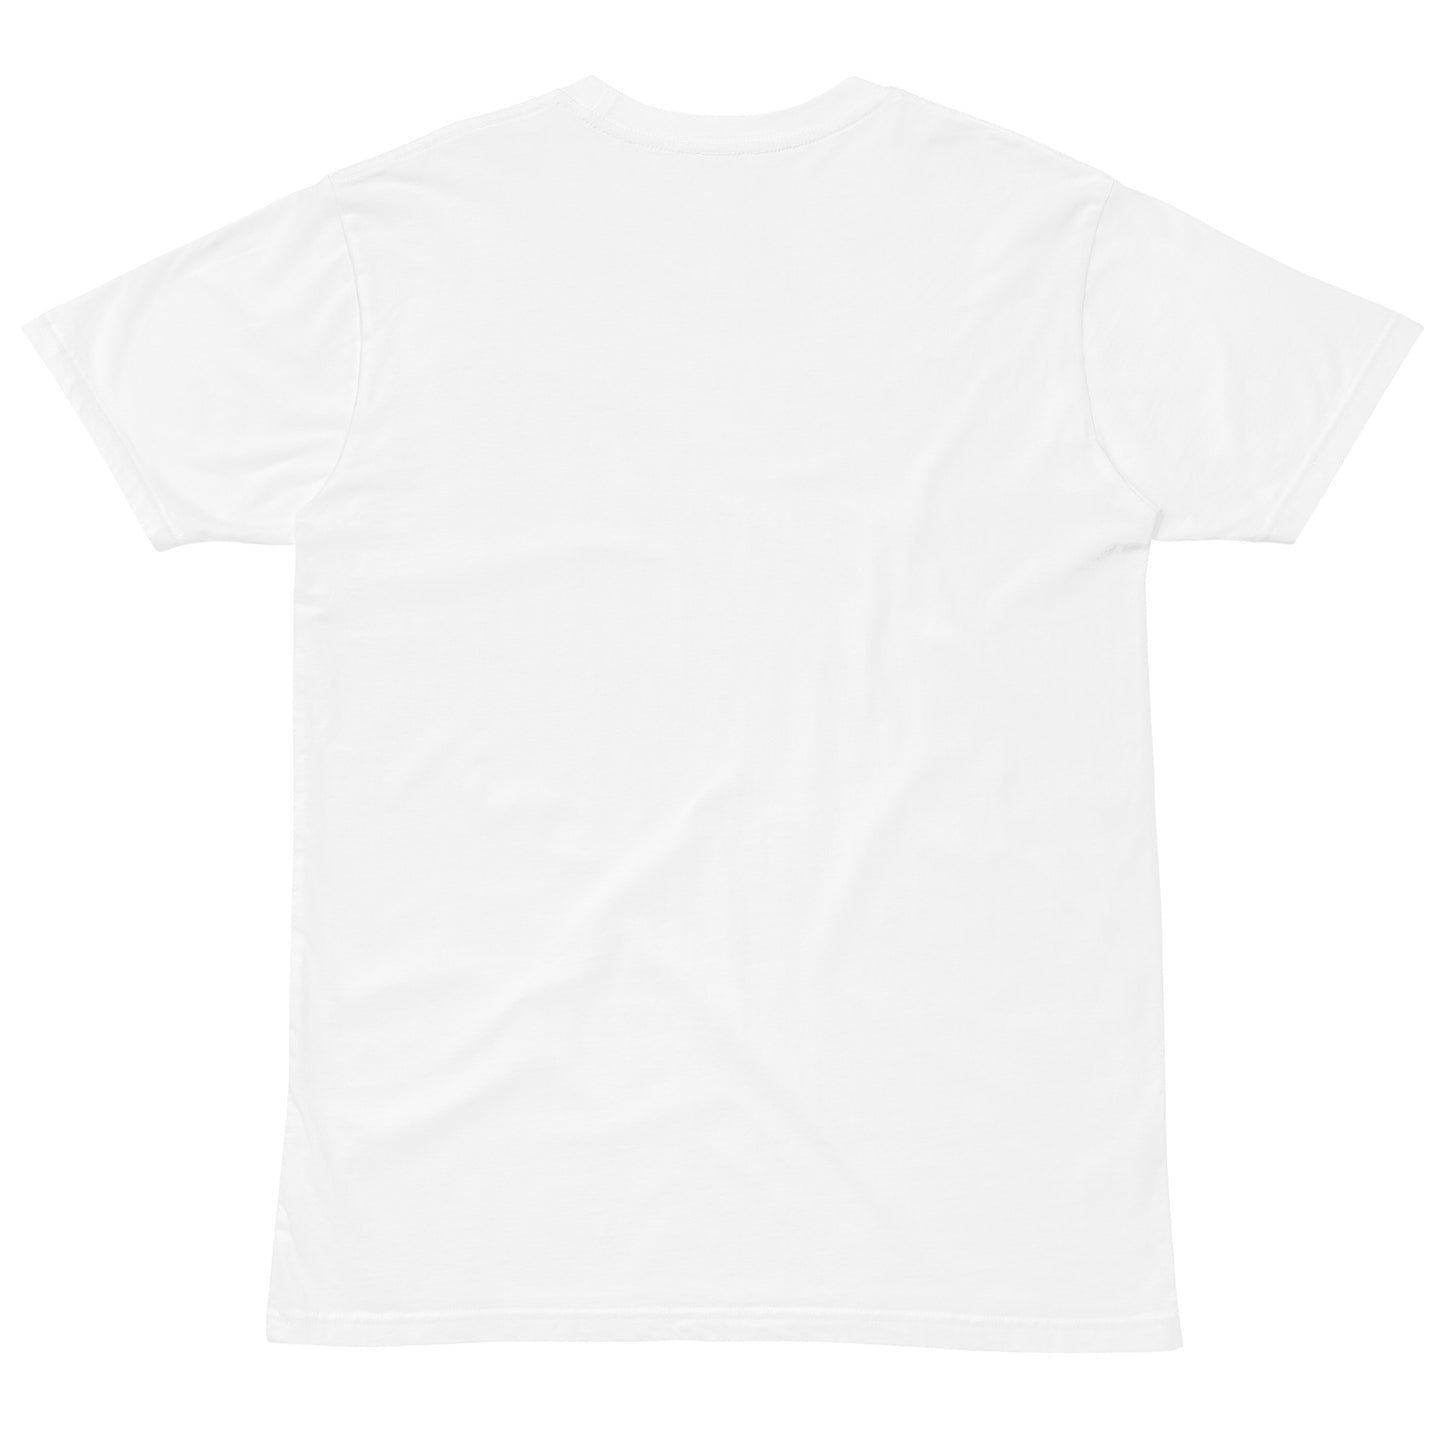 Unisex premium t-shirt - Salty